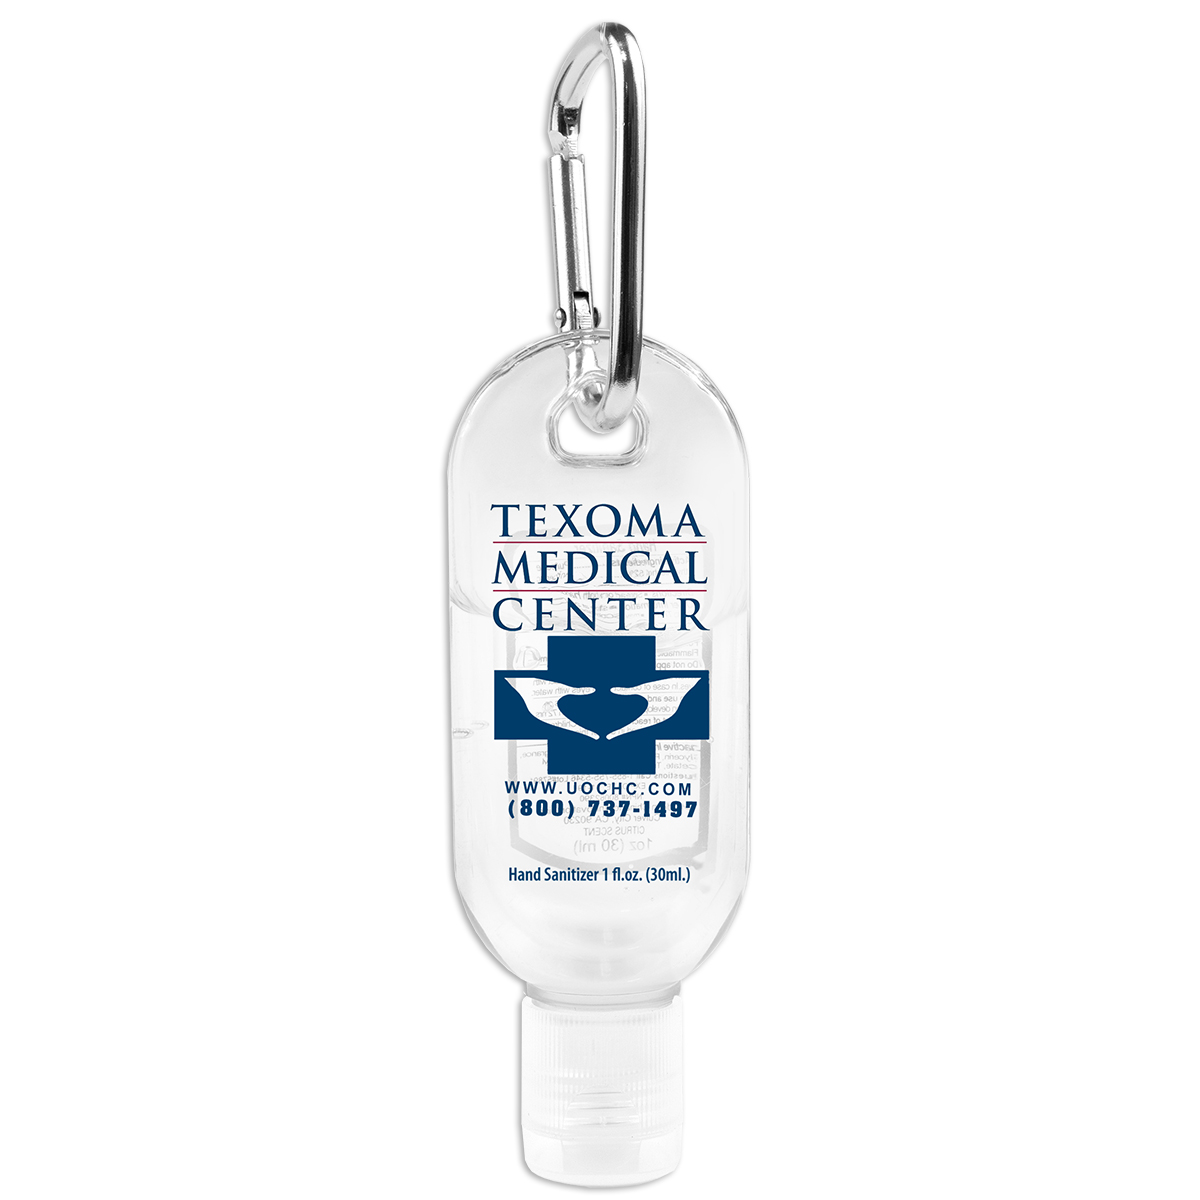 “SanGo” 1.0 oz Hand Sanitizer Antibacterial Gel in Flip-Top Bottle with Carabiner